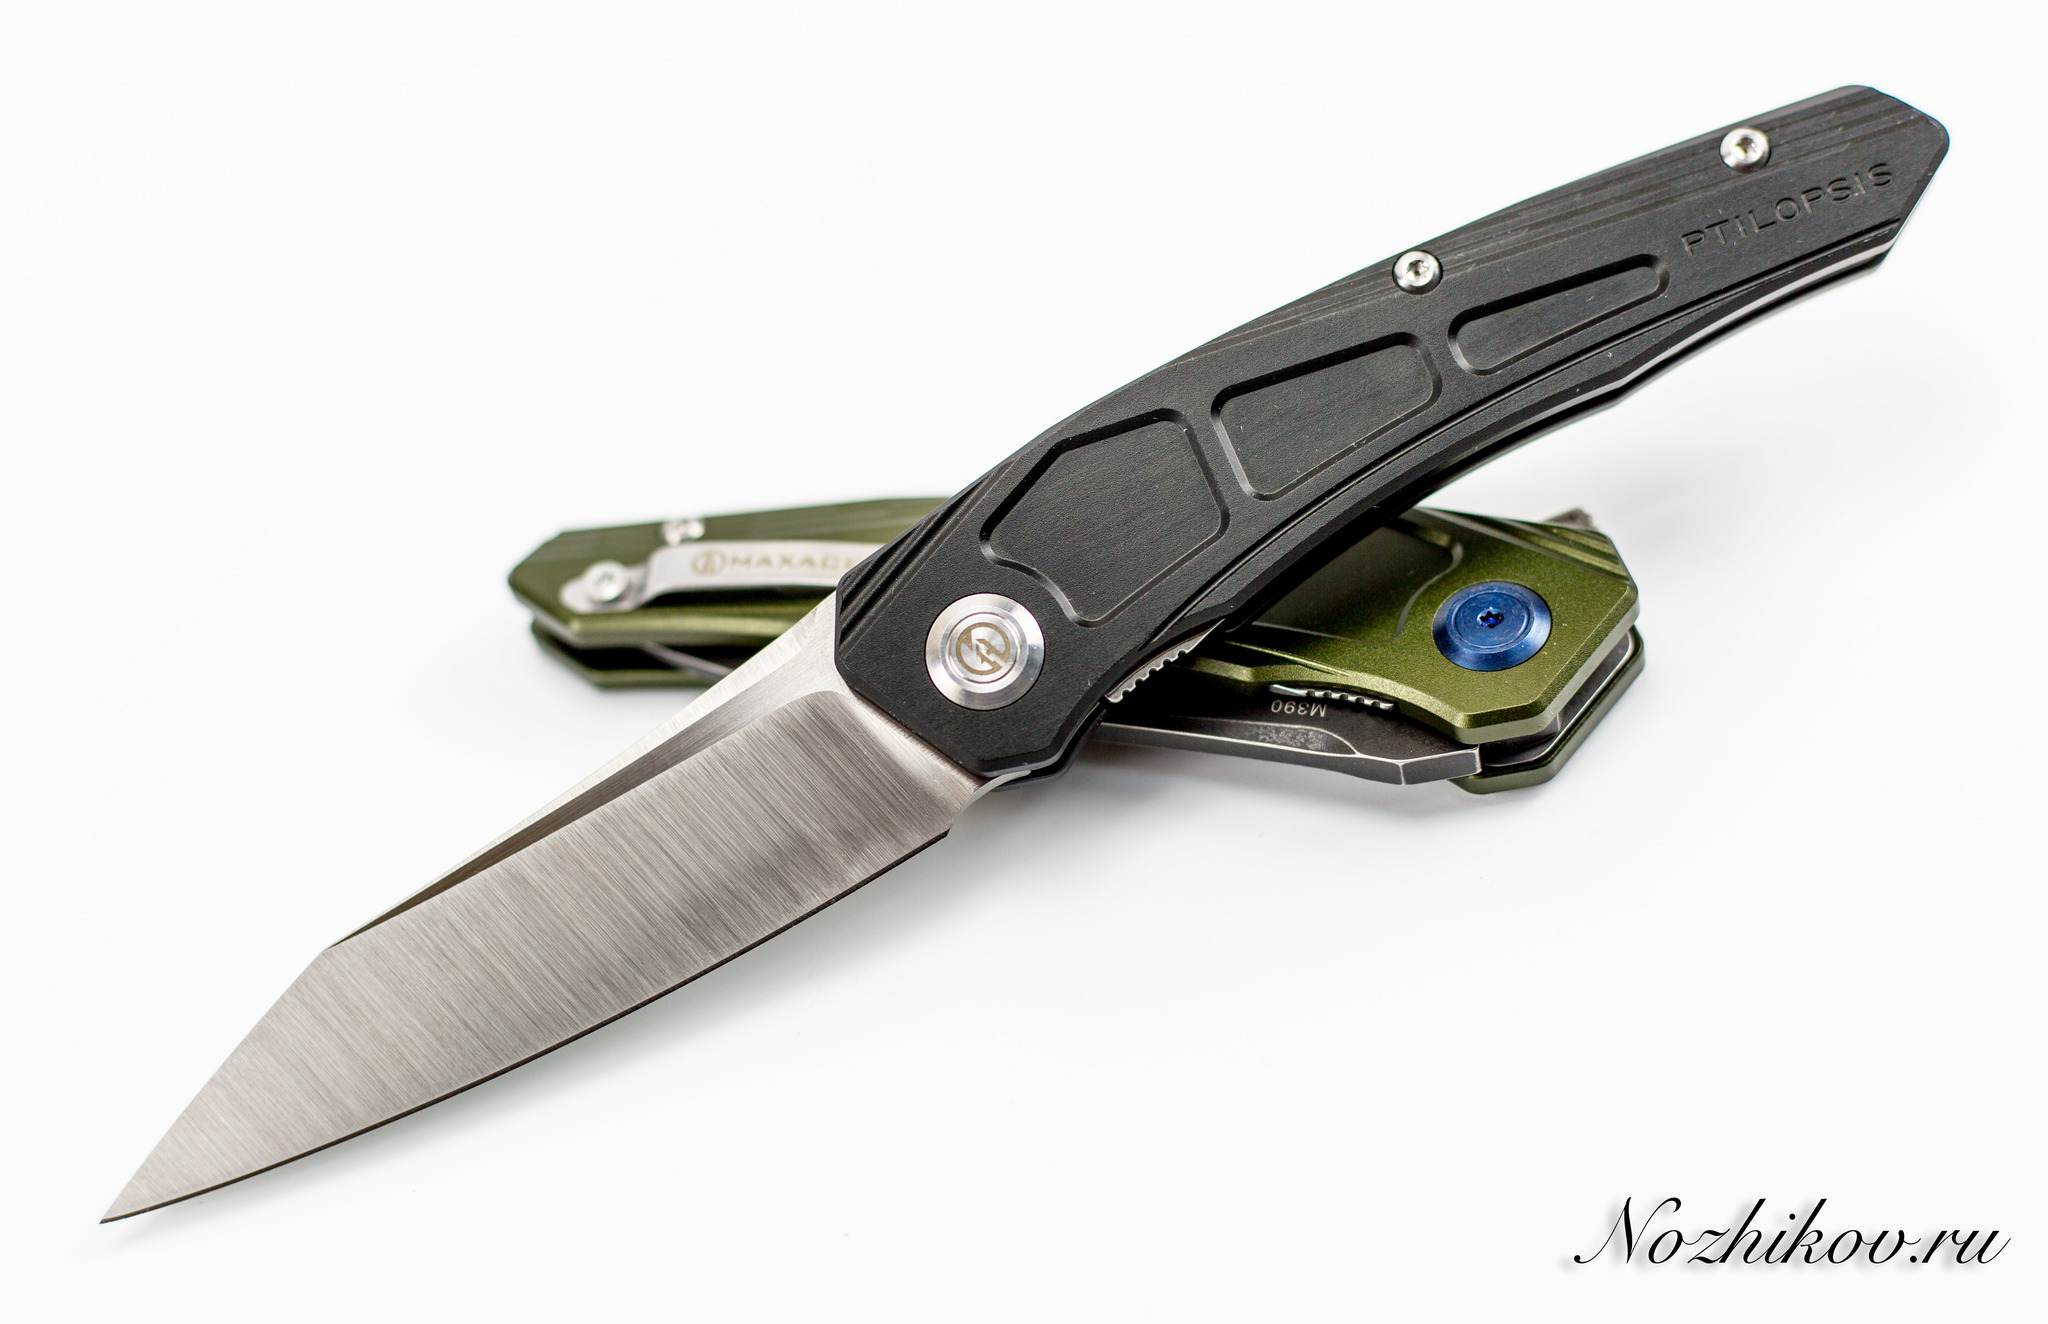 Складной нож Maxace Ptilopsis Black, сталь M390